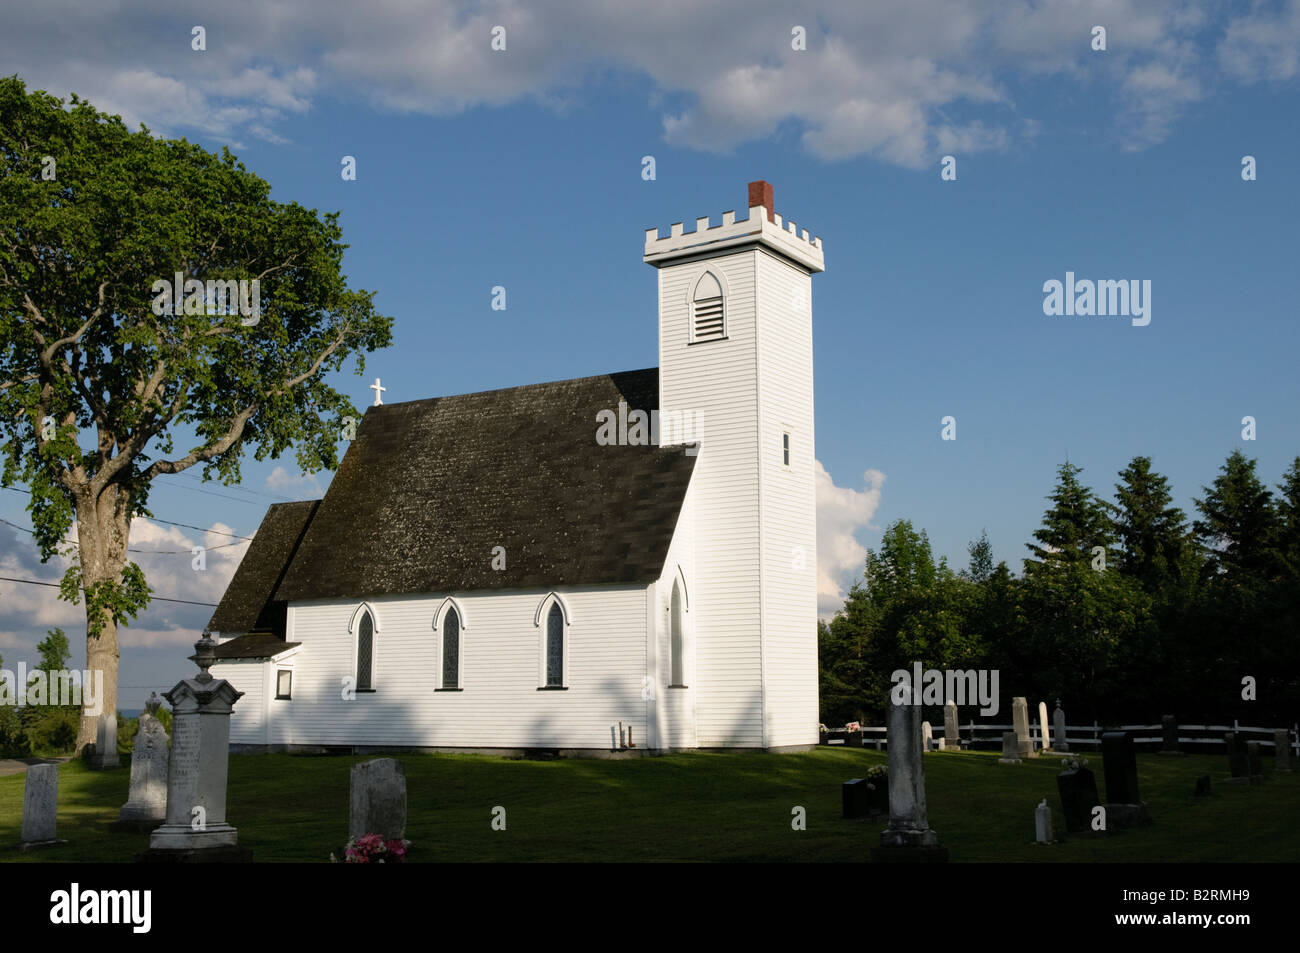 St James Anglican Church of Canada dans les régions rurales du Nouveau-Brunswick Banque D'Images